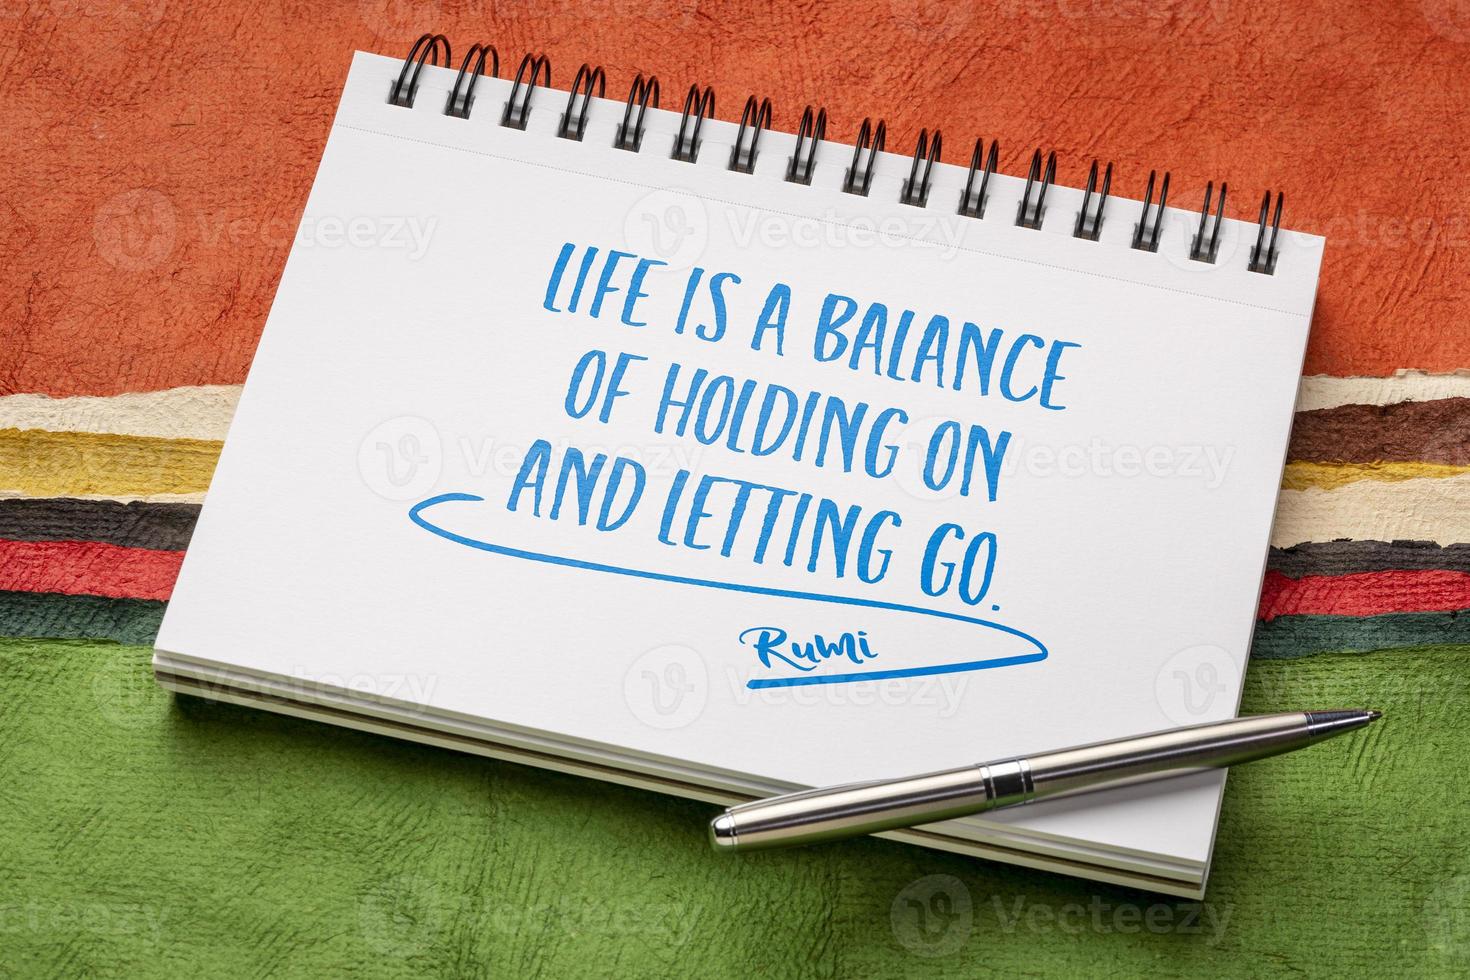 Das Leben ist ein Gleichgewicht - Rumi-Zitat foto